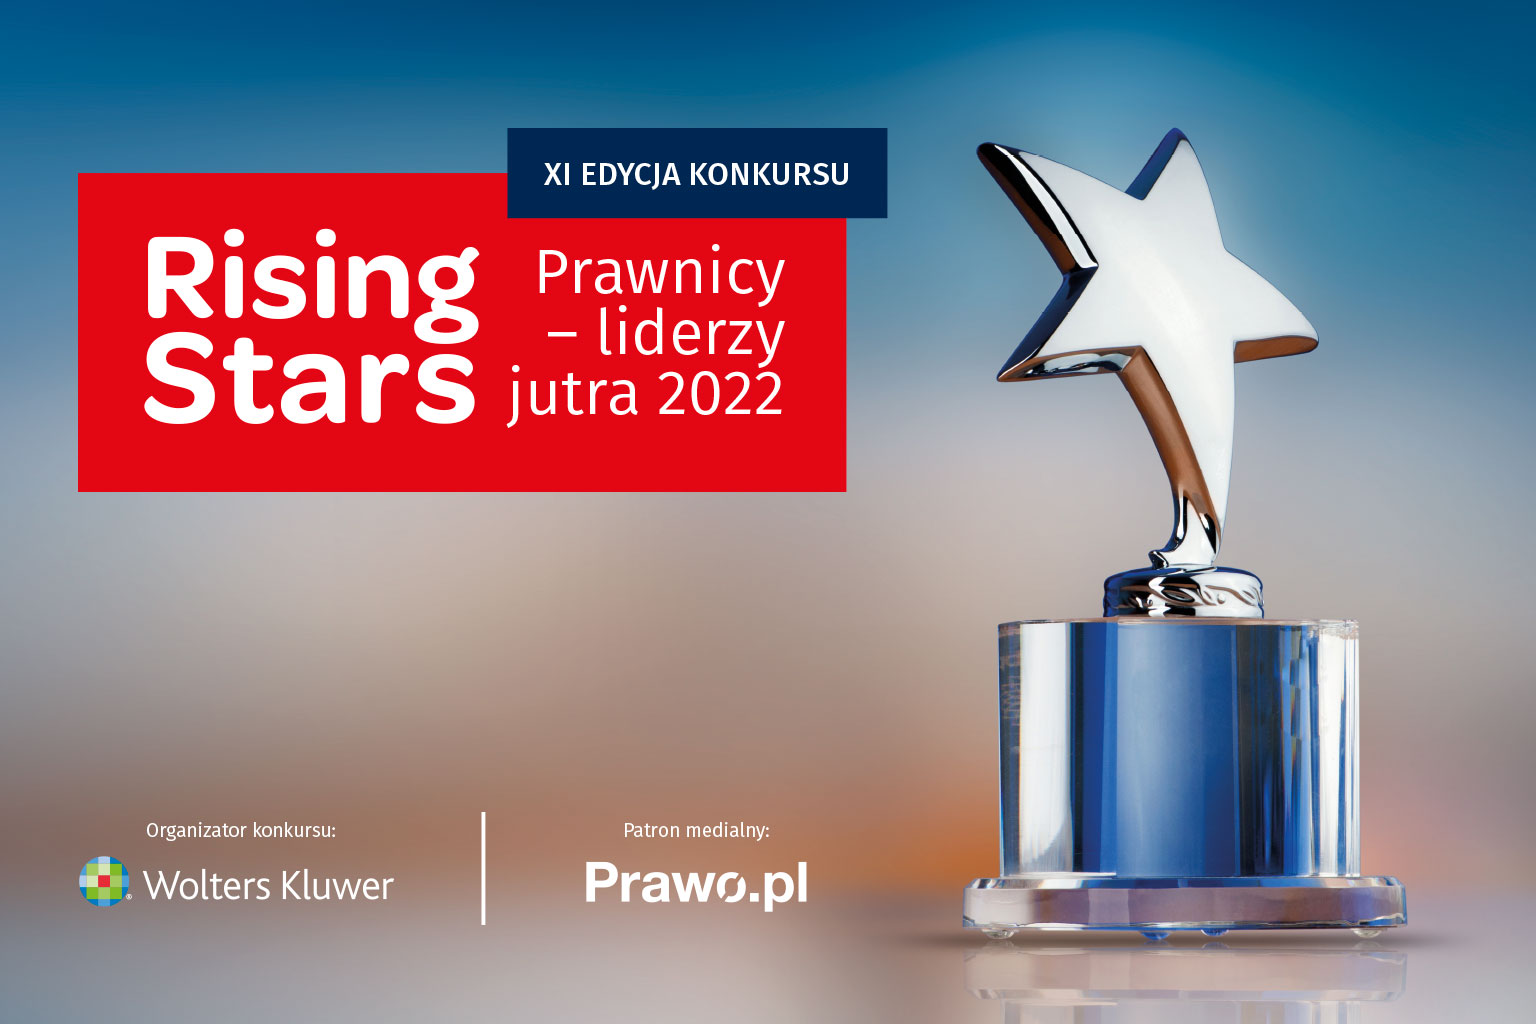 Ruszyła XI edycja konkursu Rising Stars Prawnicy – Liderzy jutra 2022 organizowanego przez Wolters Kluwer Polska